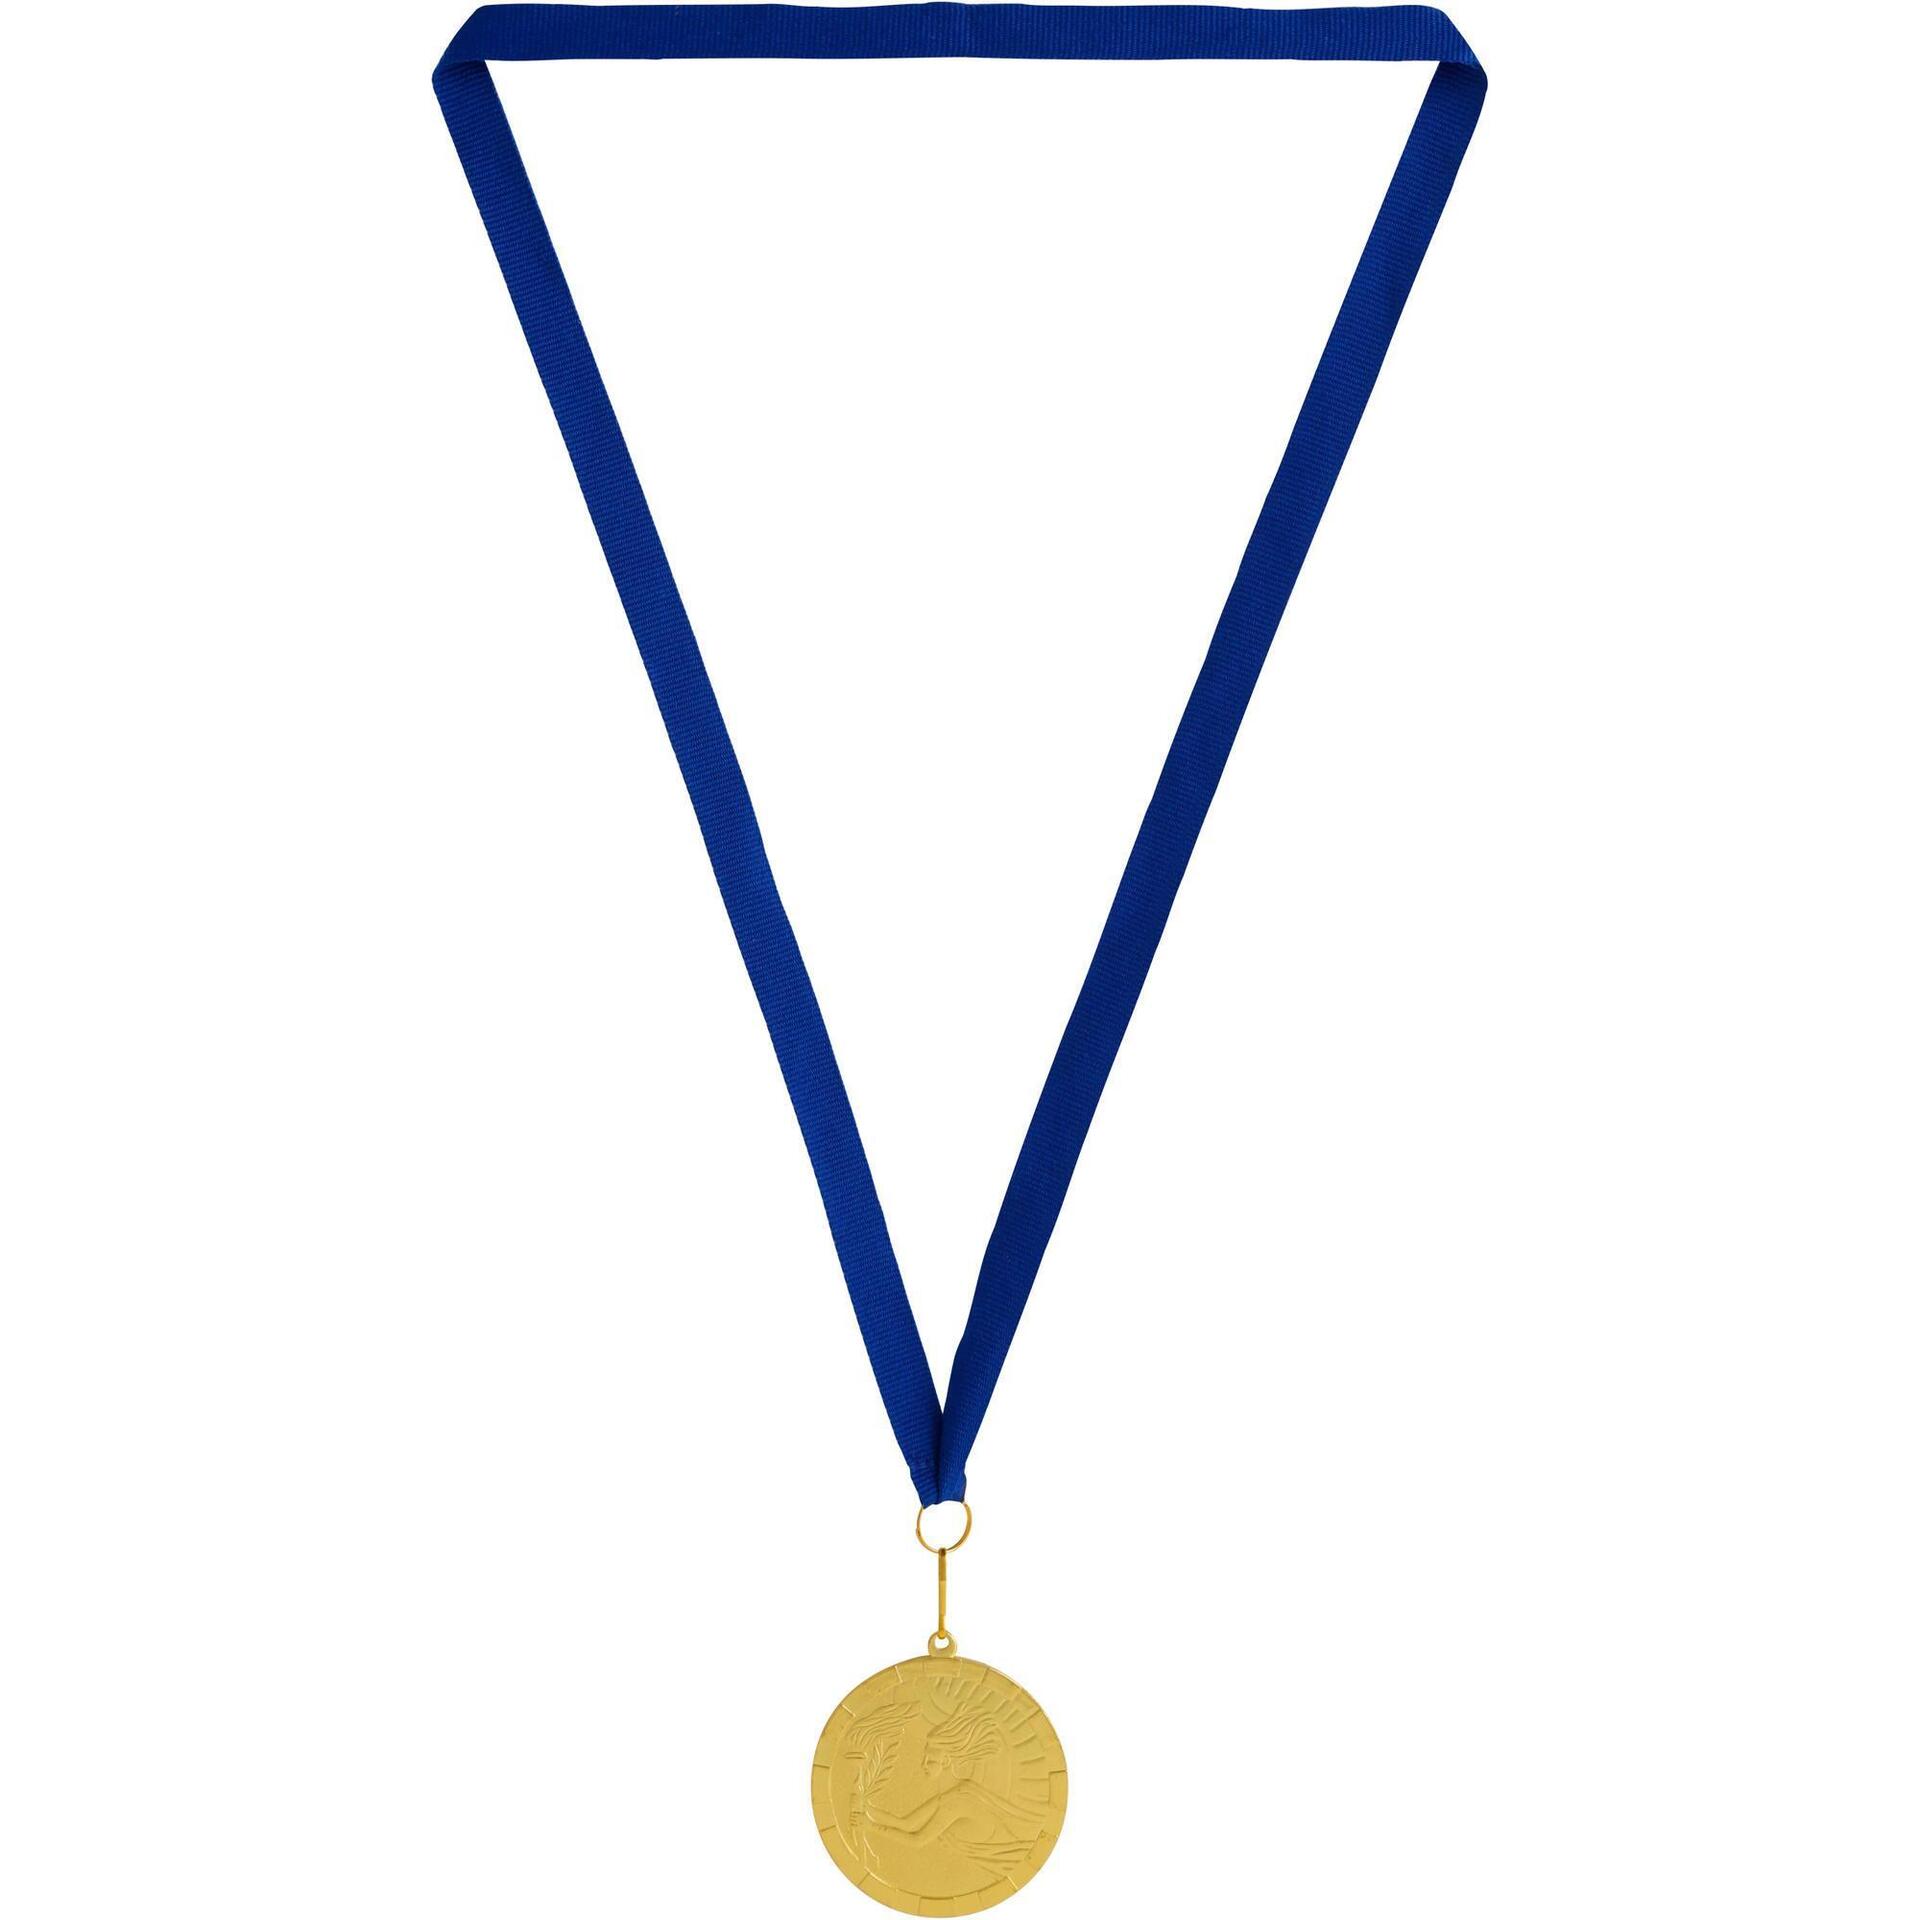 En pokal och en medalj i blått och lila.